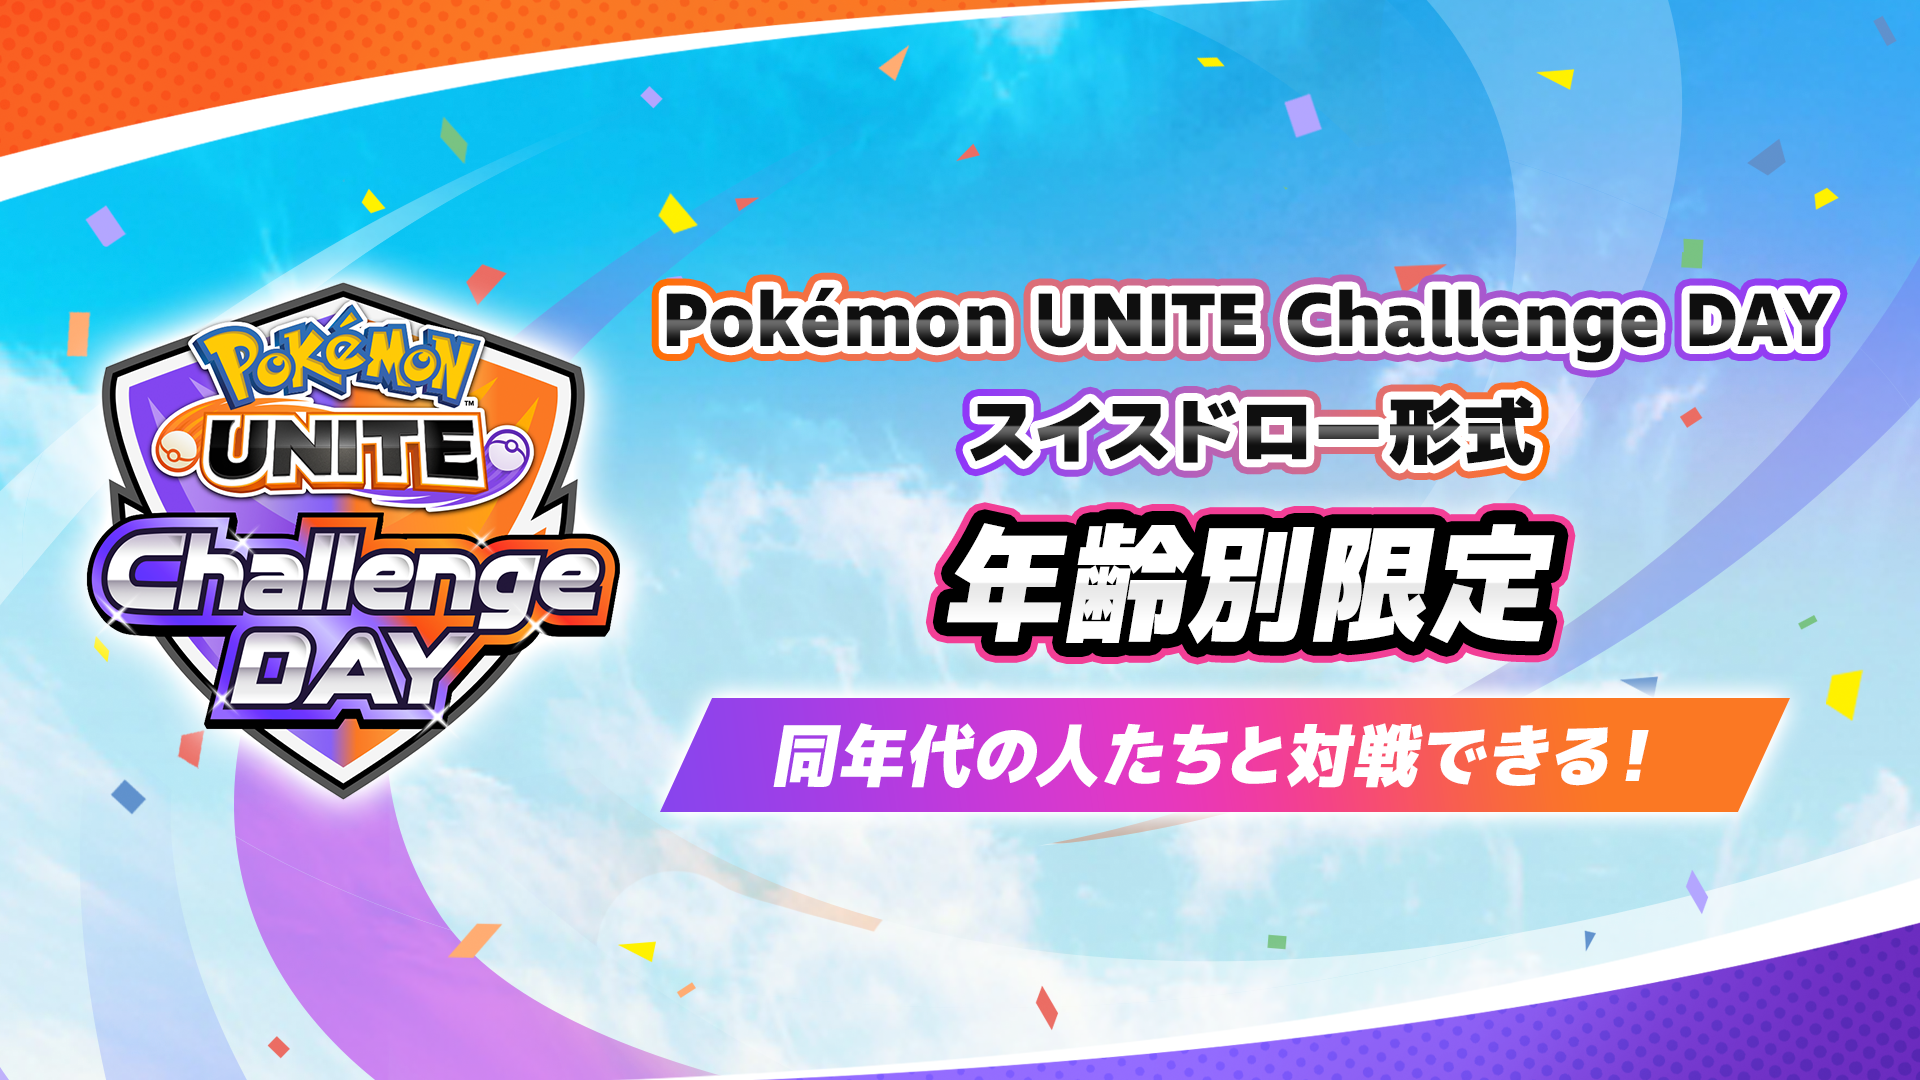 Pokemon UNITE Challenge DAY 05.13 年齢別限定 スイスドロー形式 計2イベント開催！